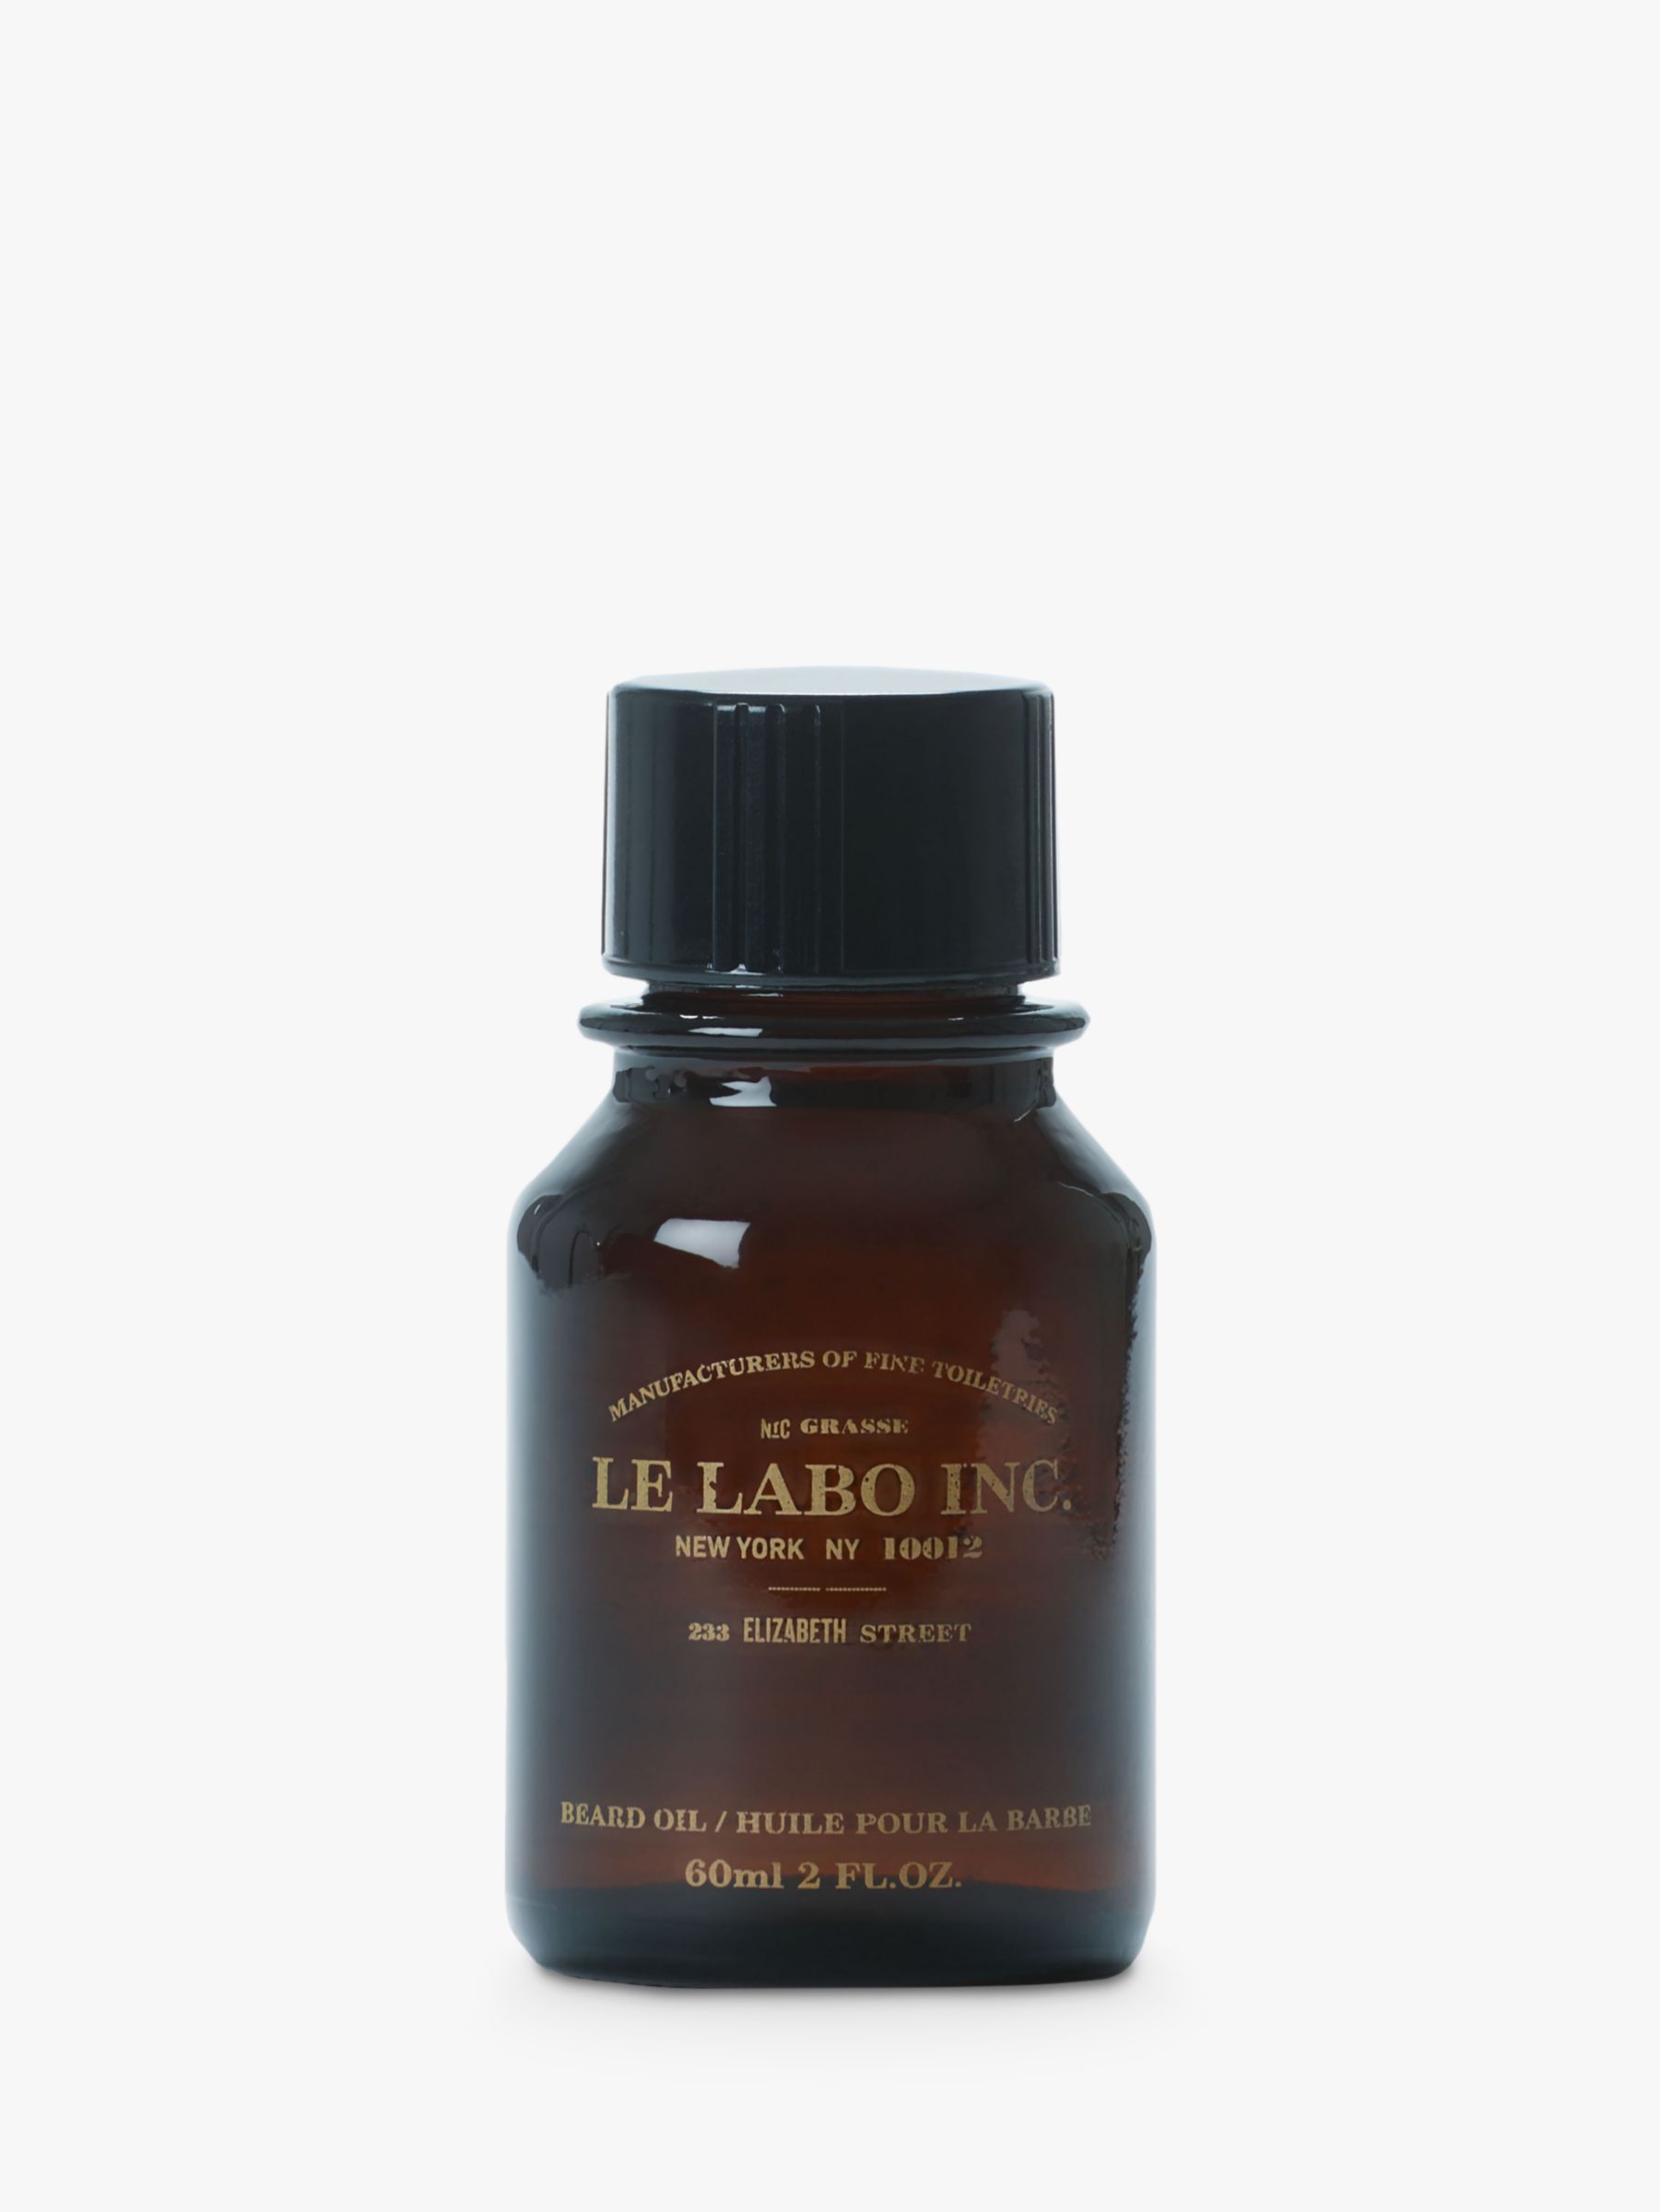 Le Labo Beard Oil, 60ml 1